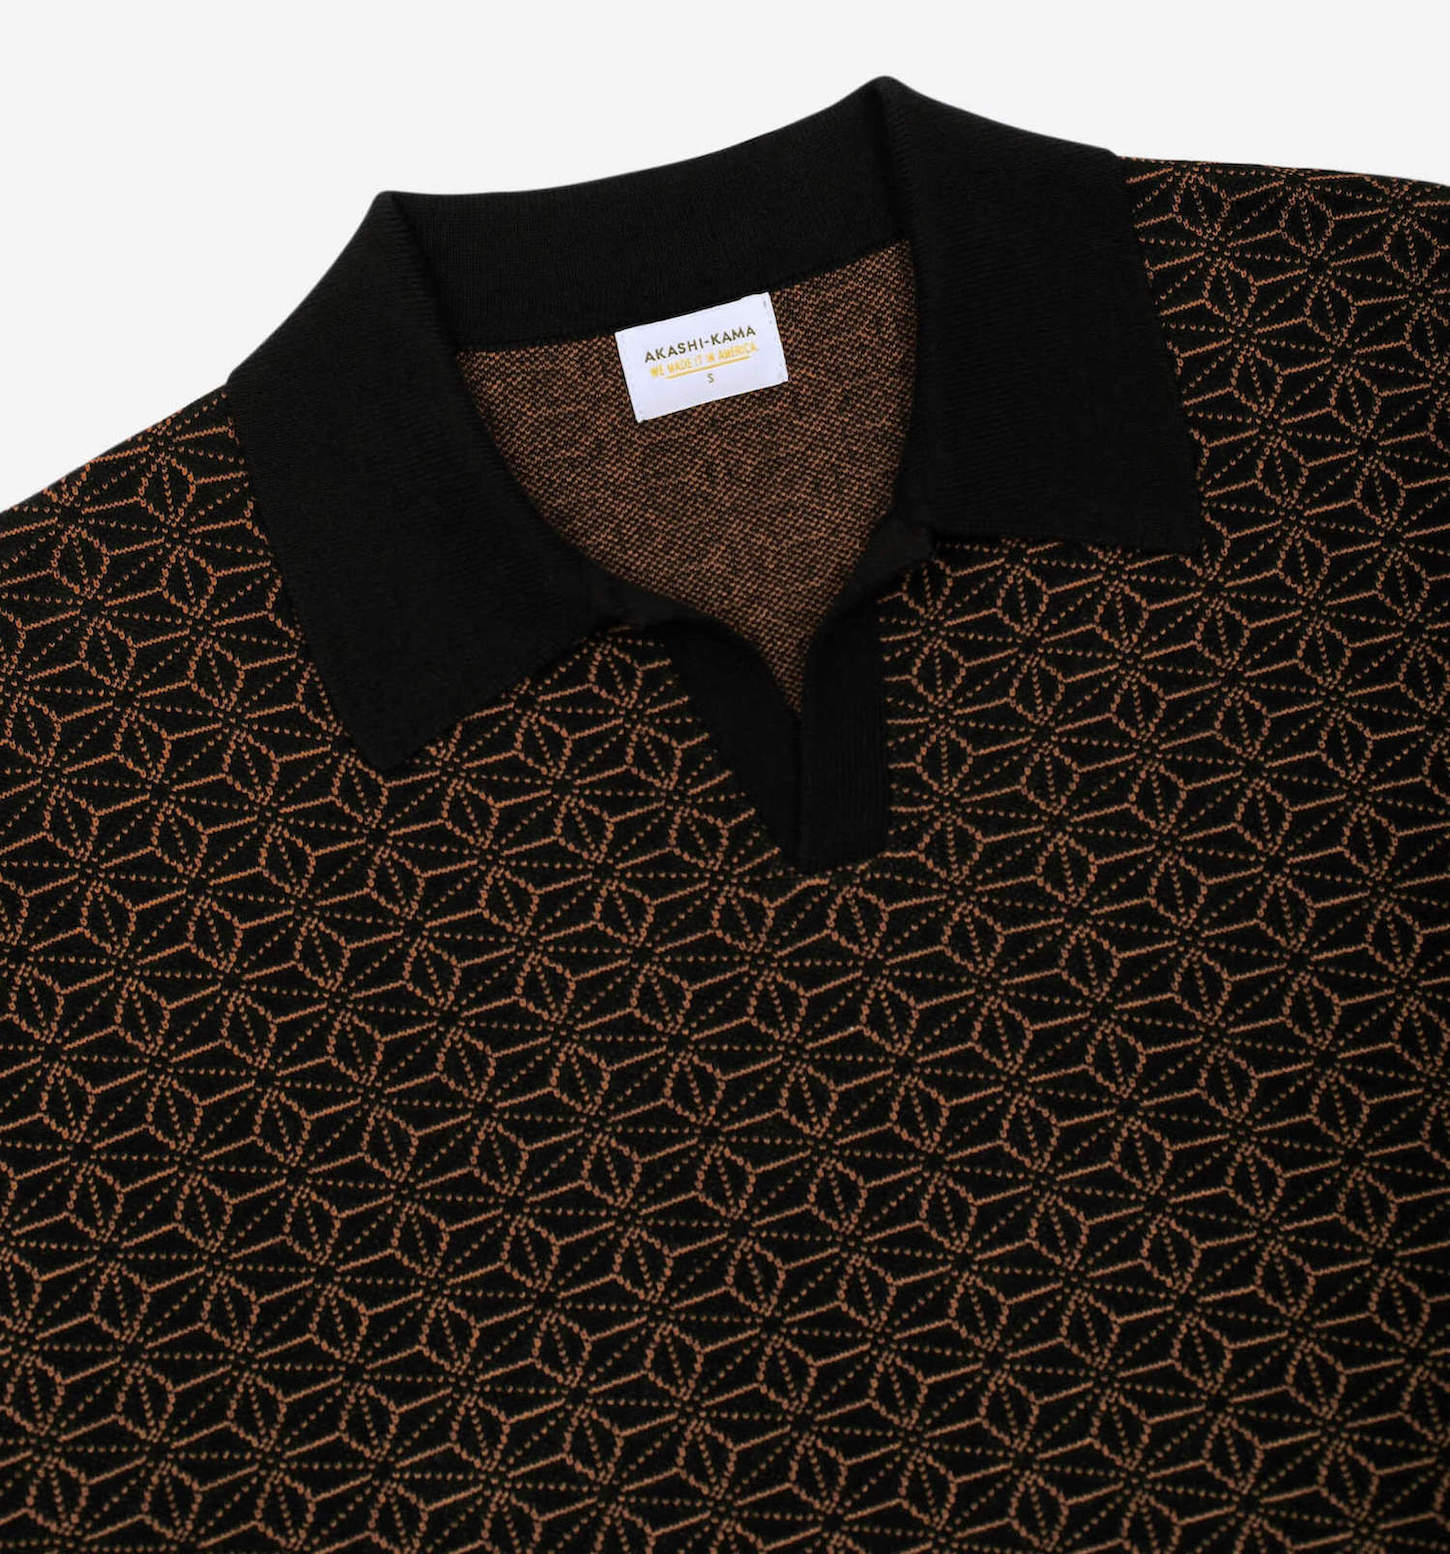 Asanoha Japanese Pattern Ojii Black Polo Shirt | AKASHI KAMA Knitwear